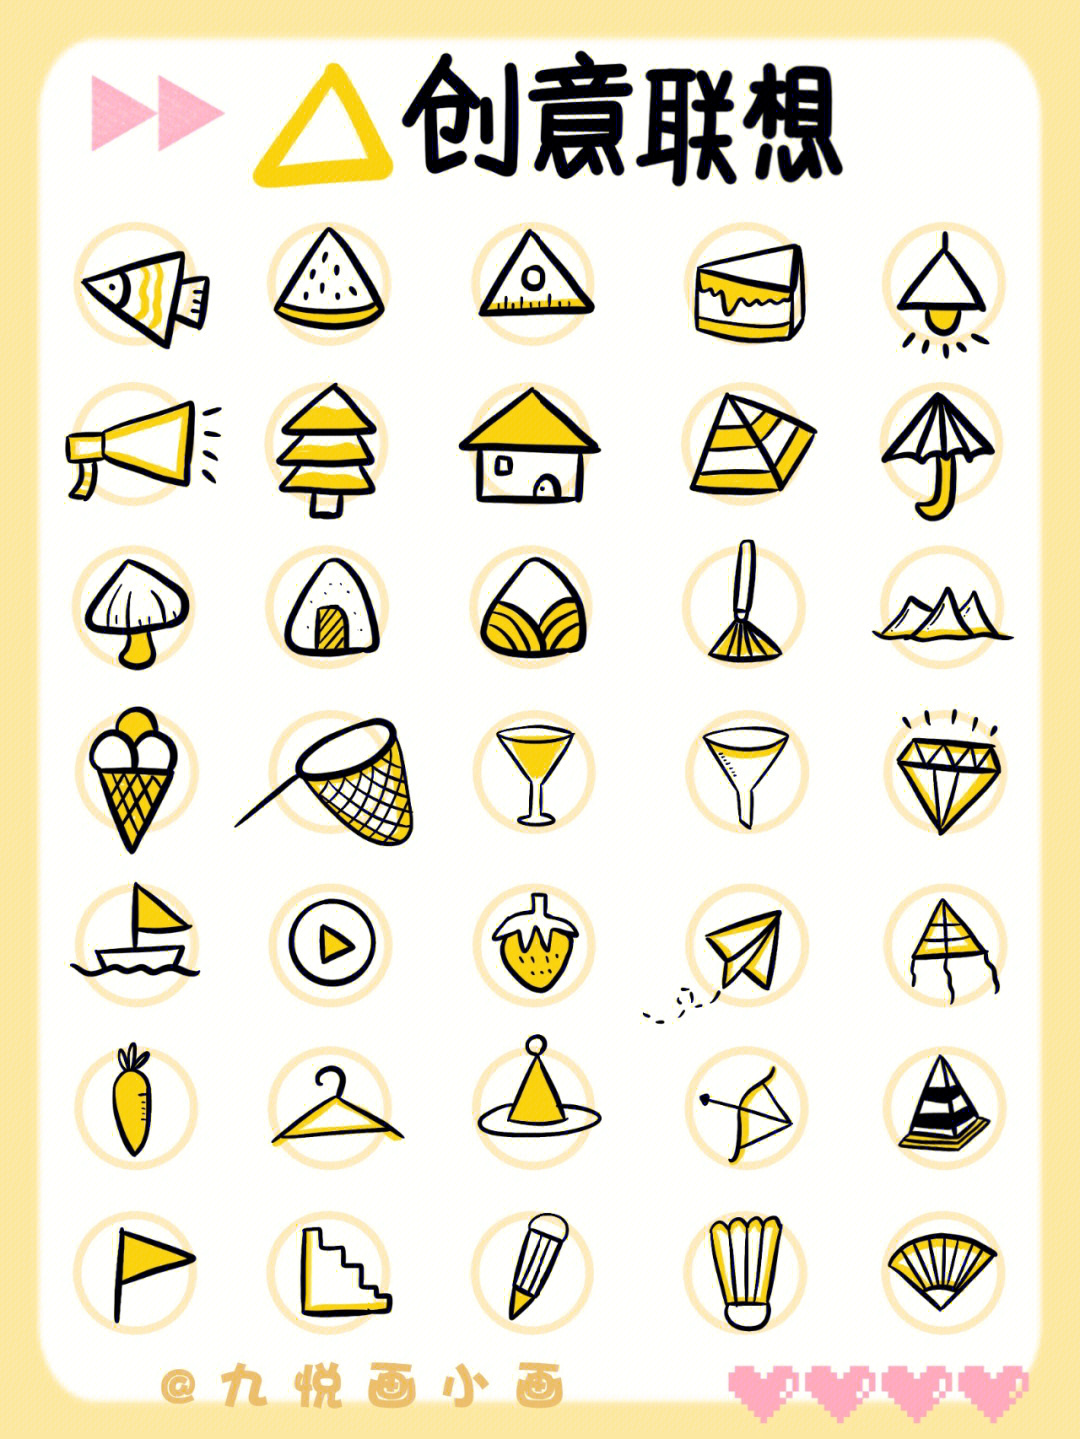 三角形联想30个图形图片